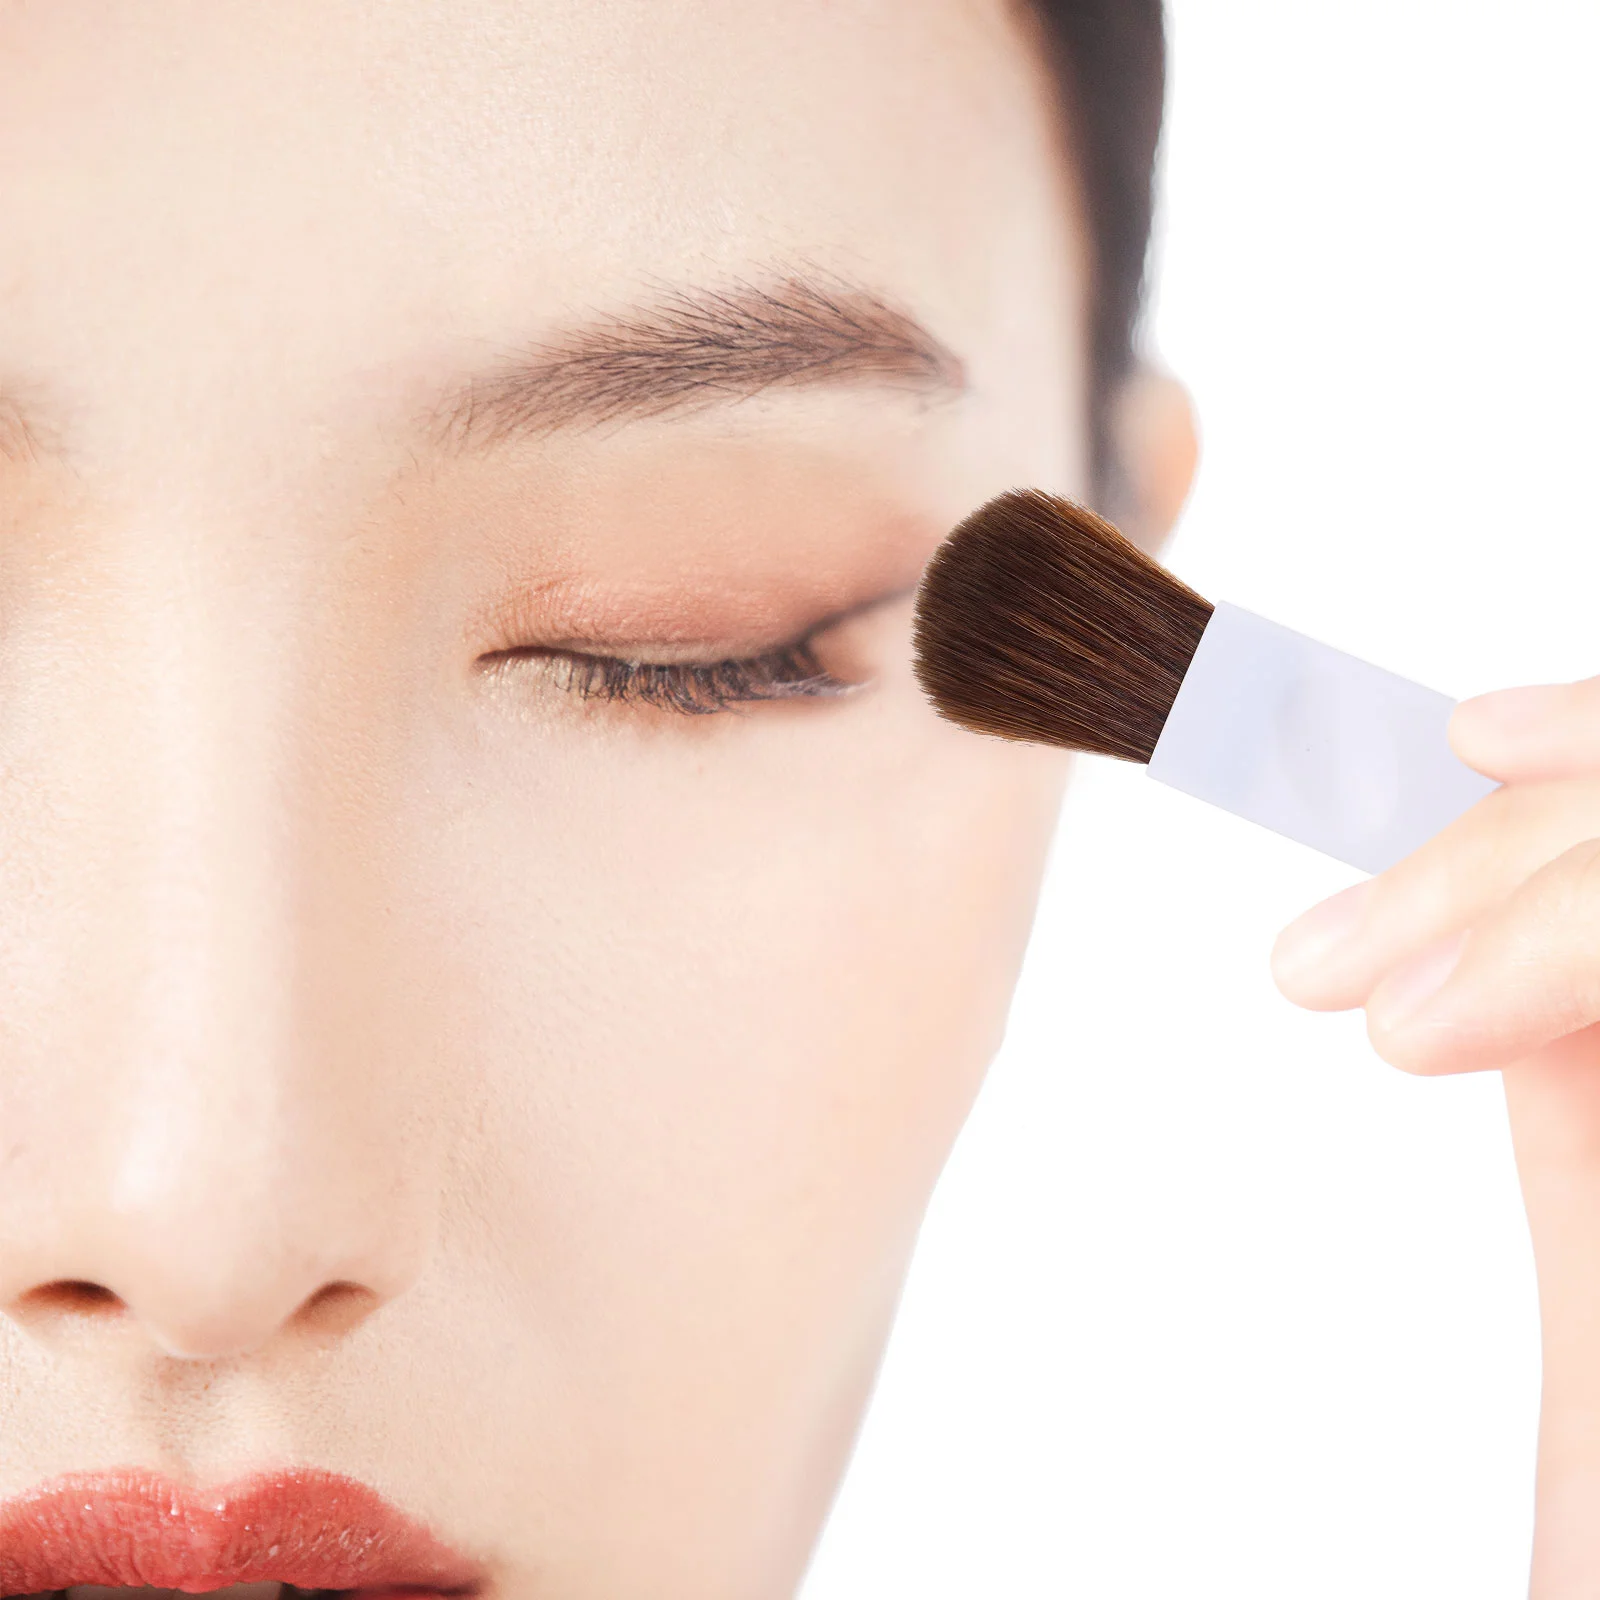 Blush Brush Makeup Lady hordozható Blusher Tools kiegészítők Pvc arcutazás